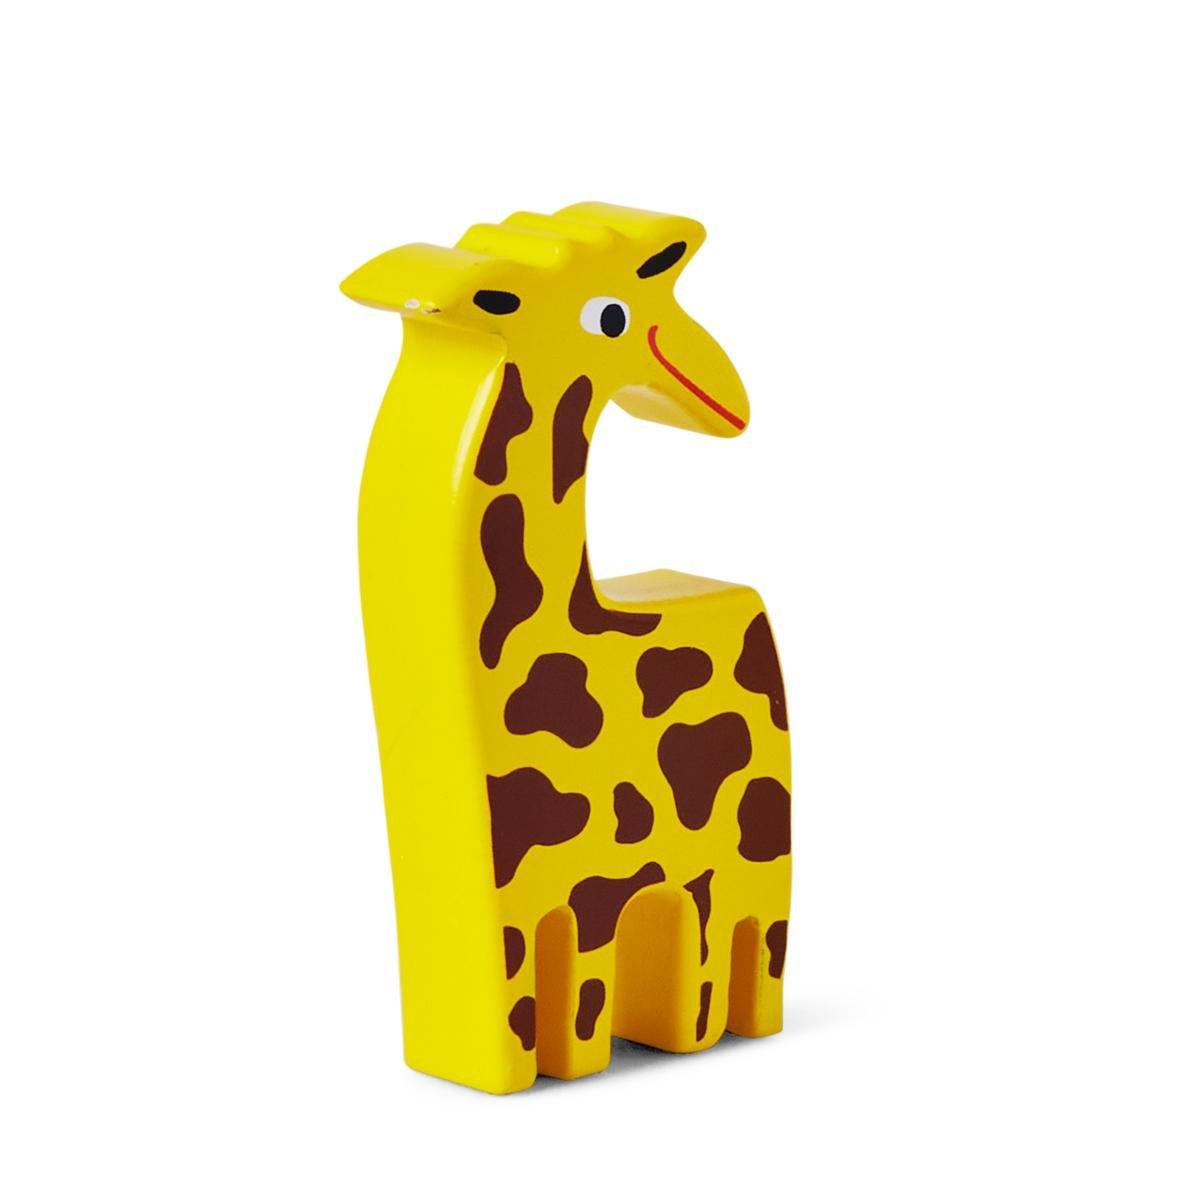 Yellow giraffe wooden animal